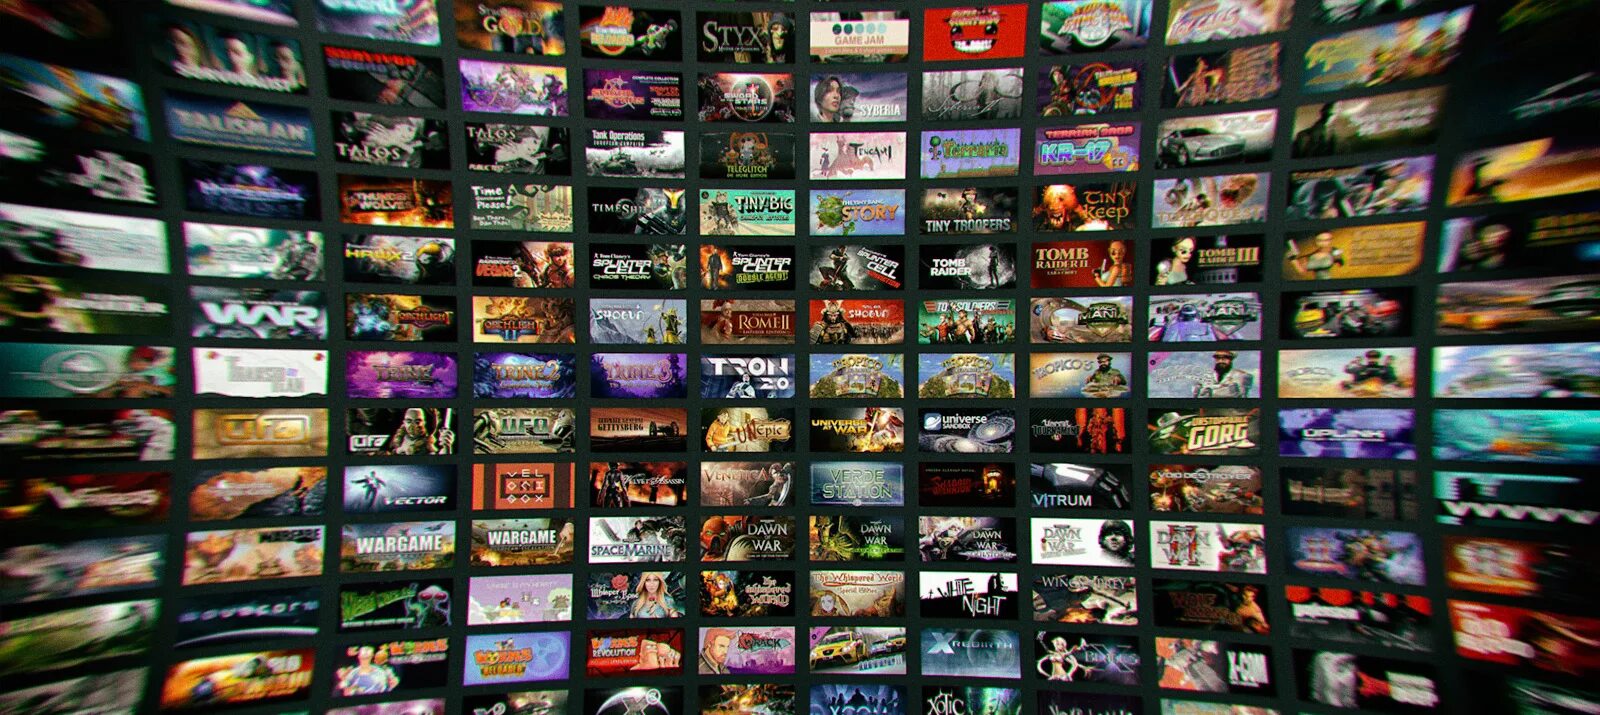 Много игр много игр на телевизоре. Много компьютерных игр. Разные игры. Несколько игр в одной картинке. Много игр.